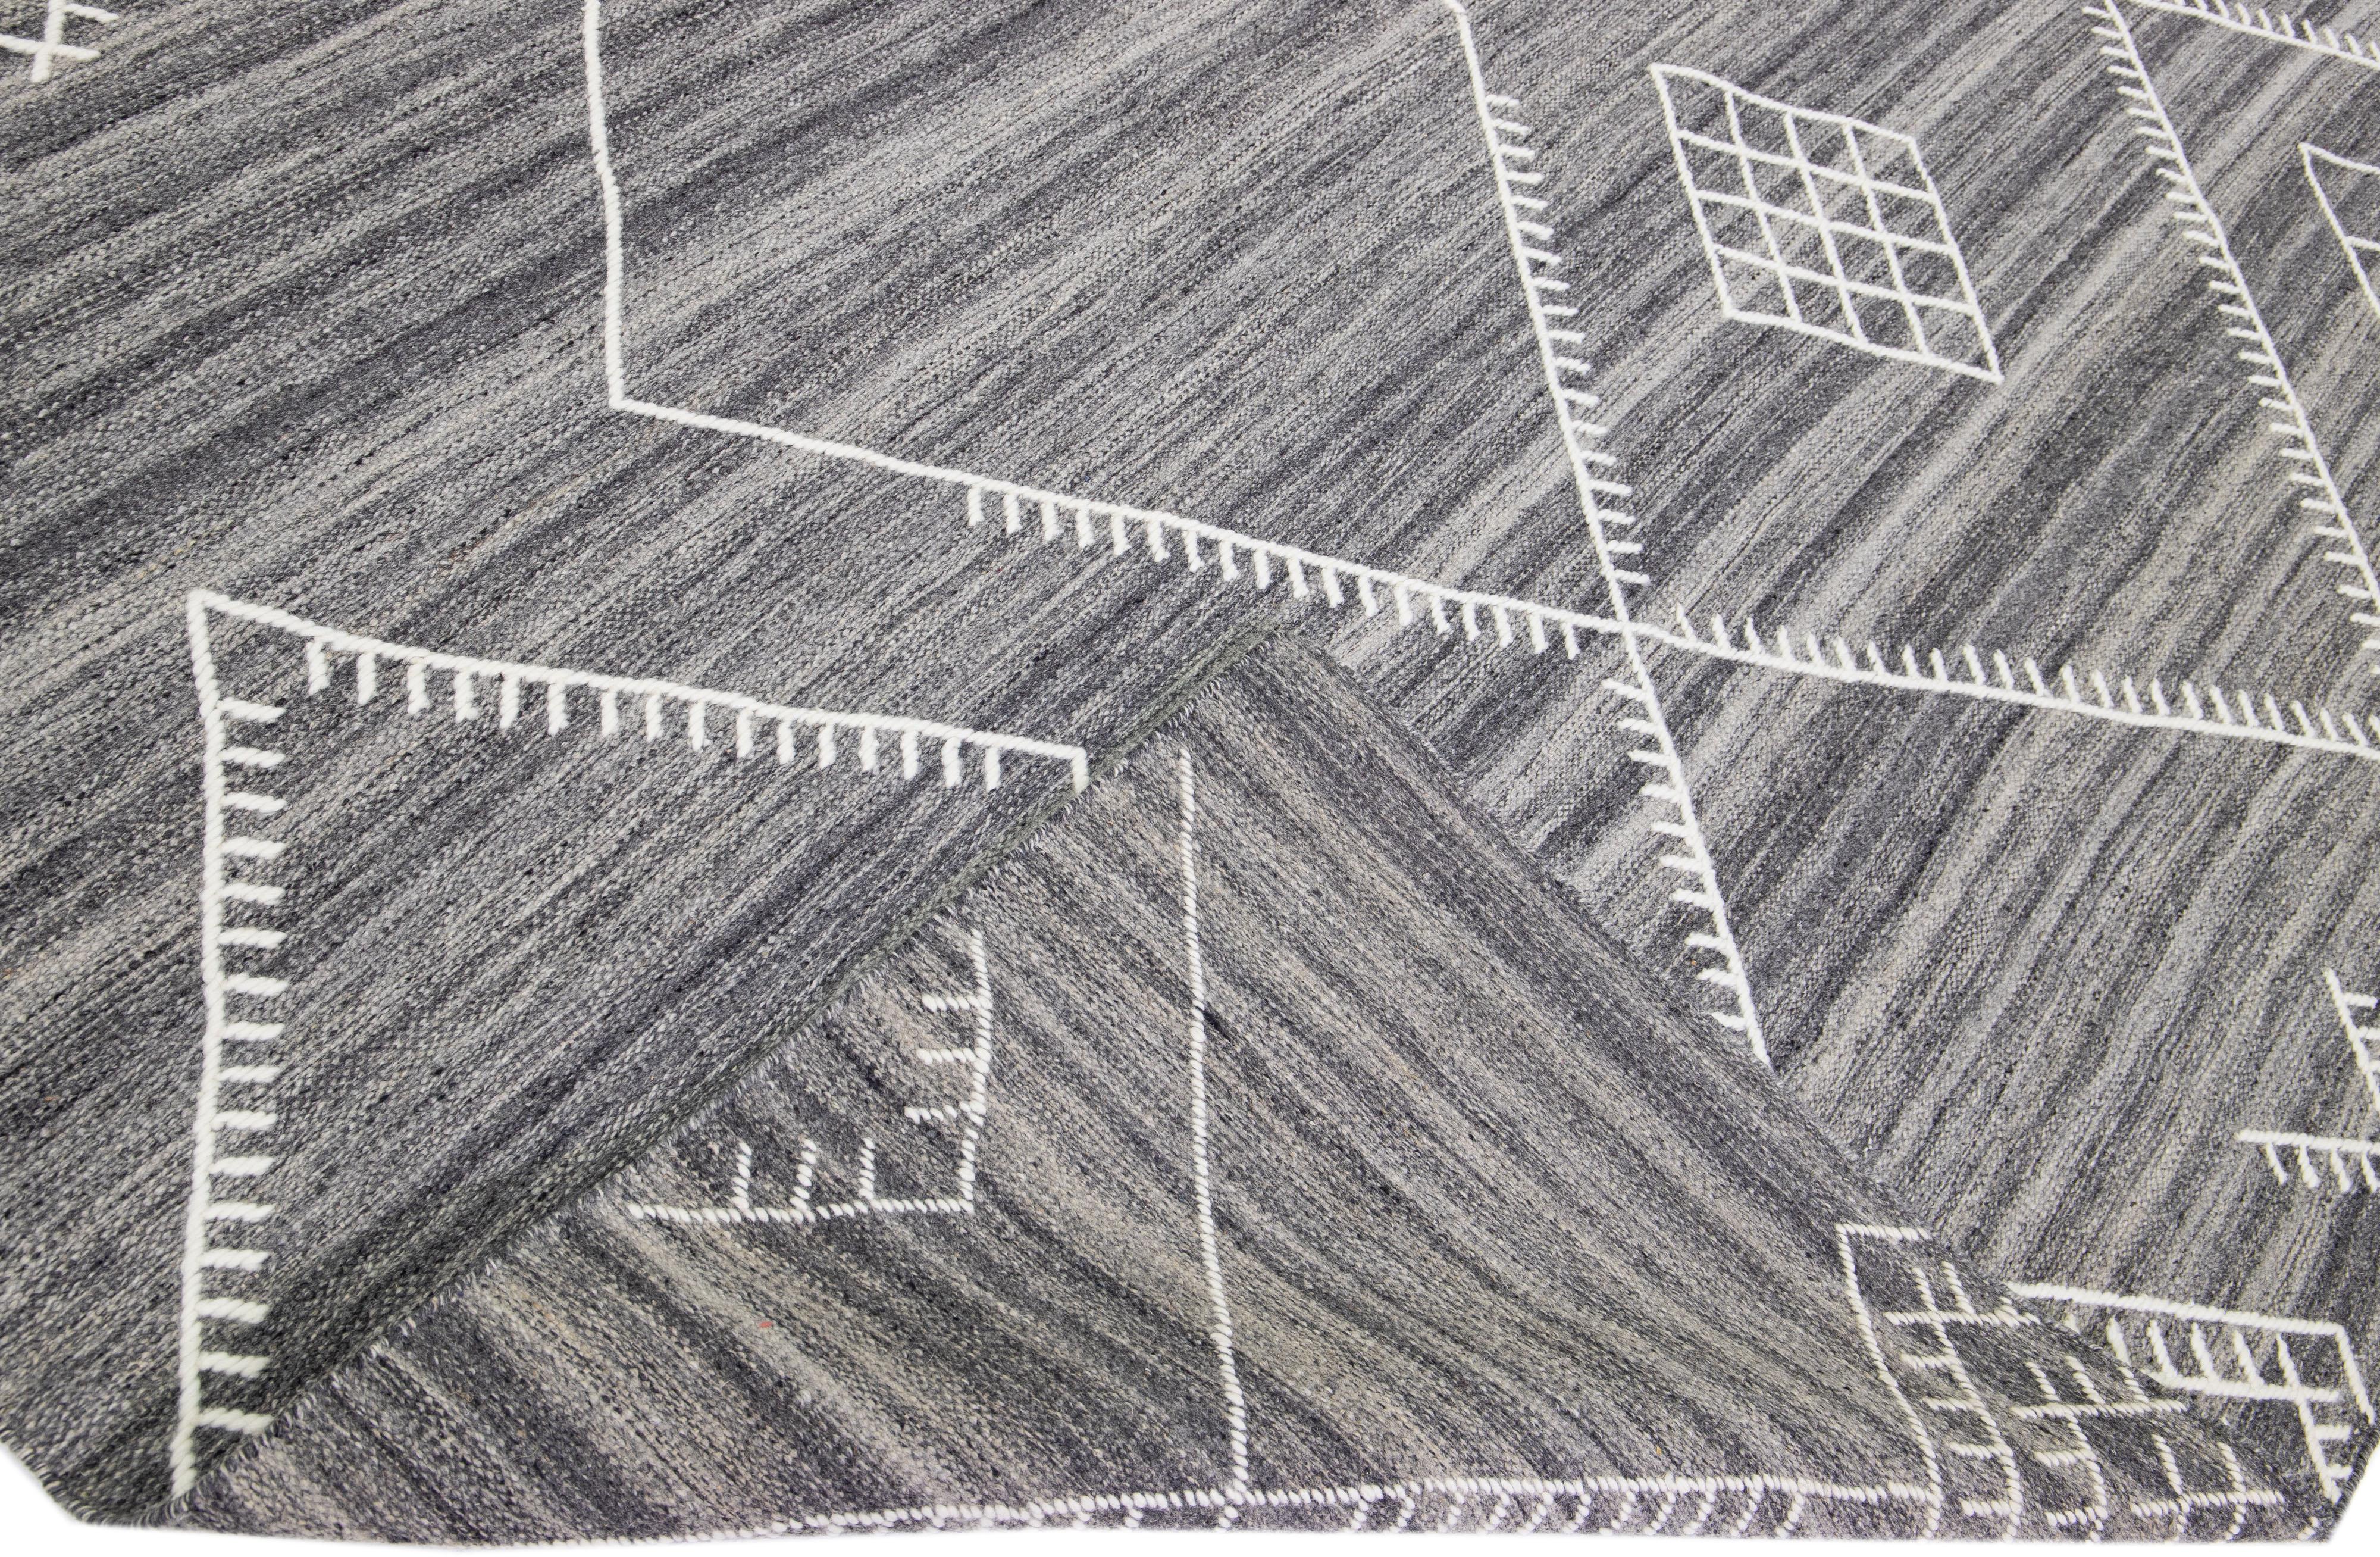 Schöner handgefertigter Kelimteppich aus Wolle mit grauem Feld. Dieser moderne Flachgewebe-Teppich aus unserer Nantucket-Kollektion hat weiße Akzente und ein wunderschönes, geometrisches Küstendesign.

Dieser Teppich misst: 12'6